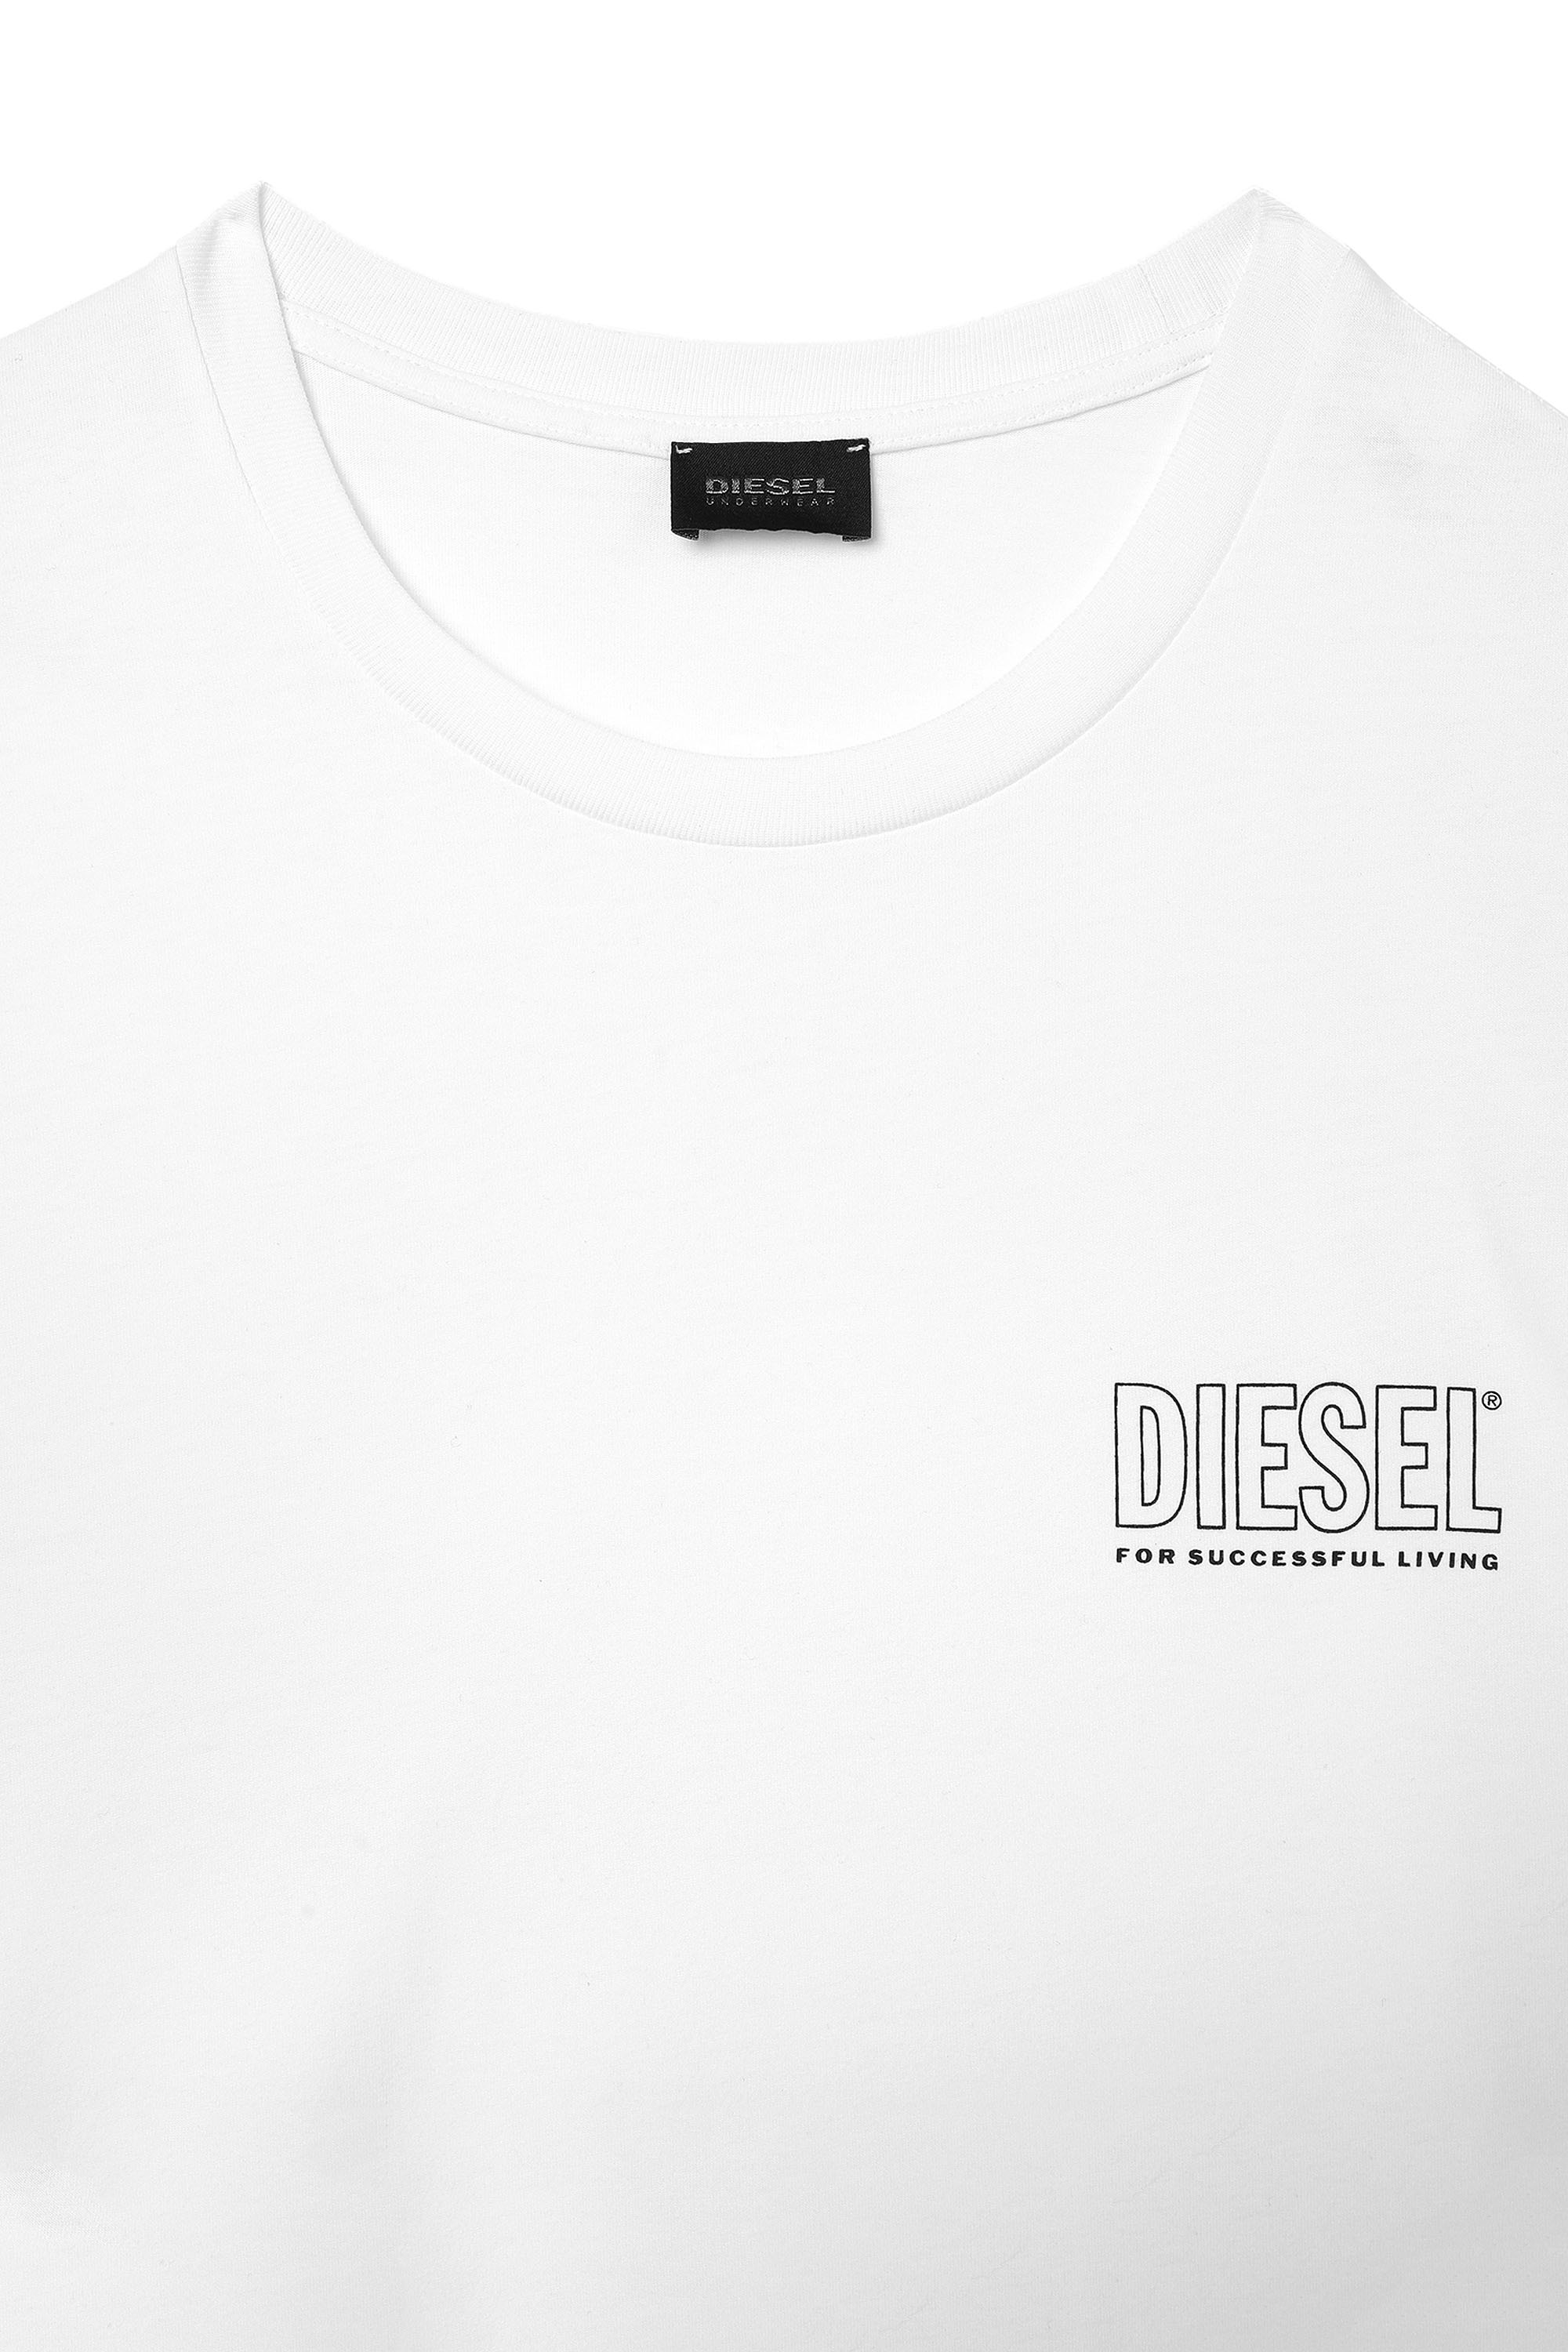 Diesel UMLT-JAKE Herren T-Shirt Shirt Oberteil Leibchen Funktionsshirt